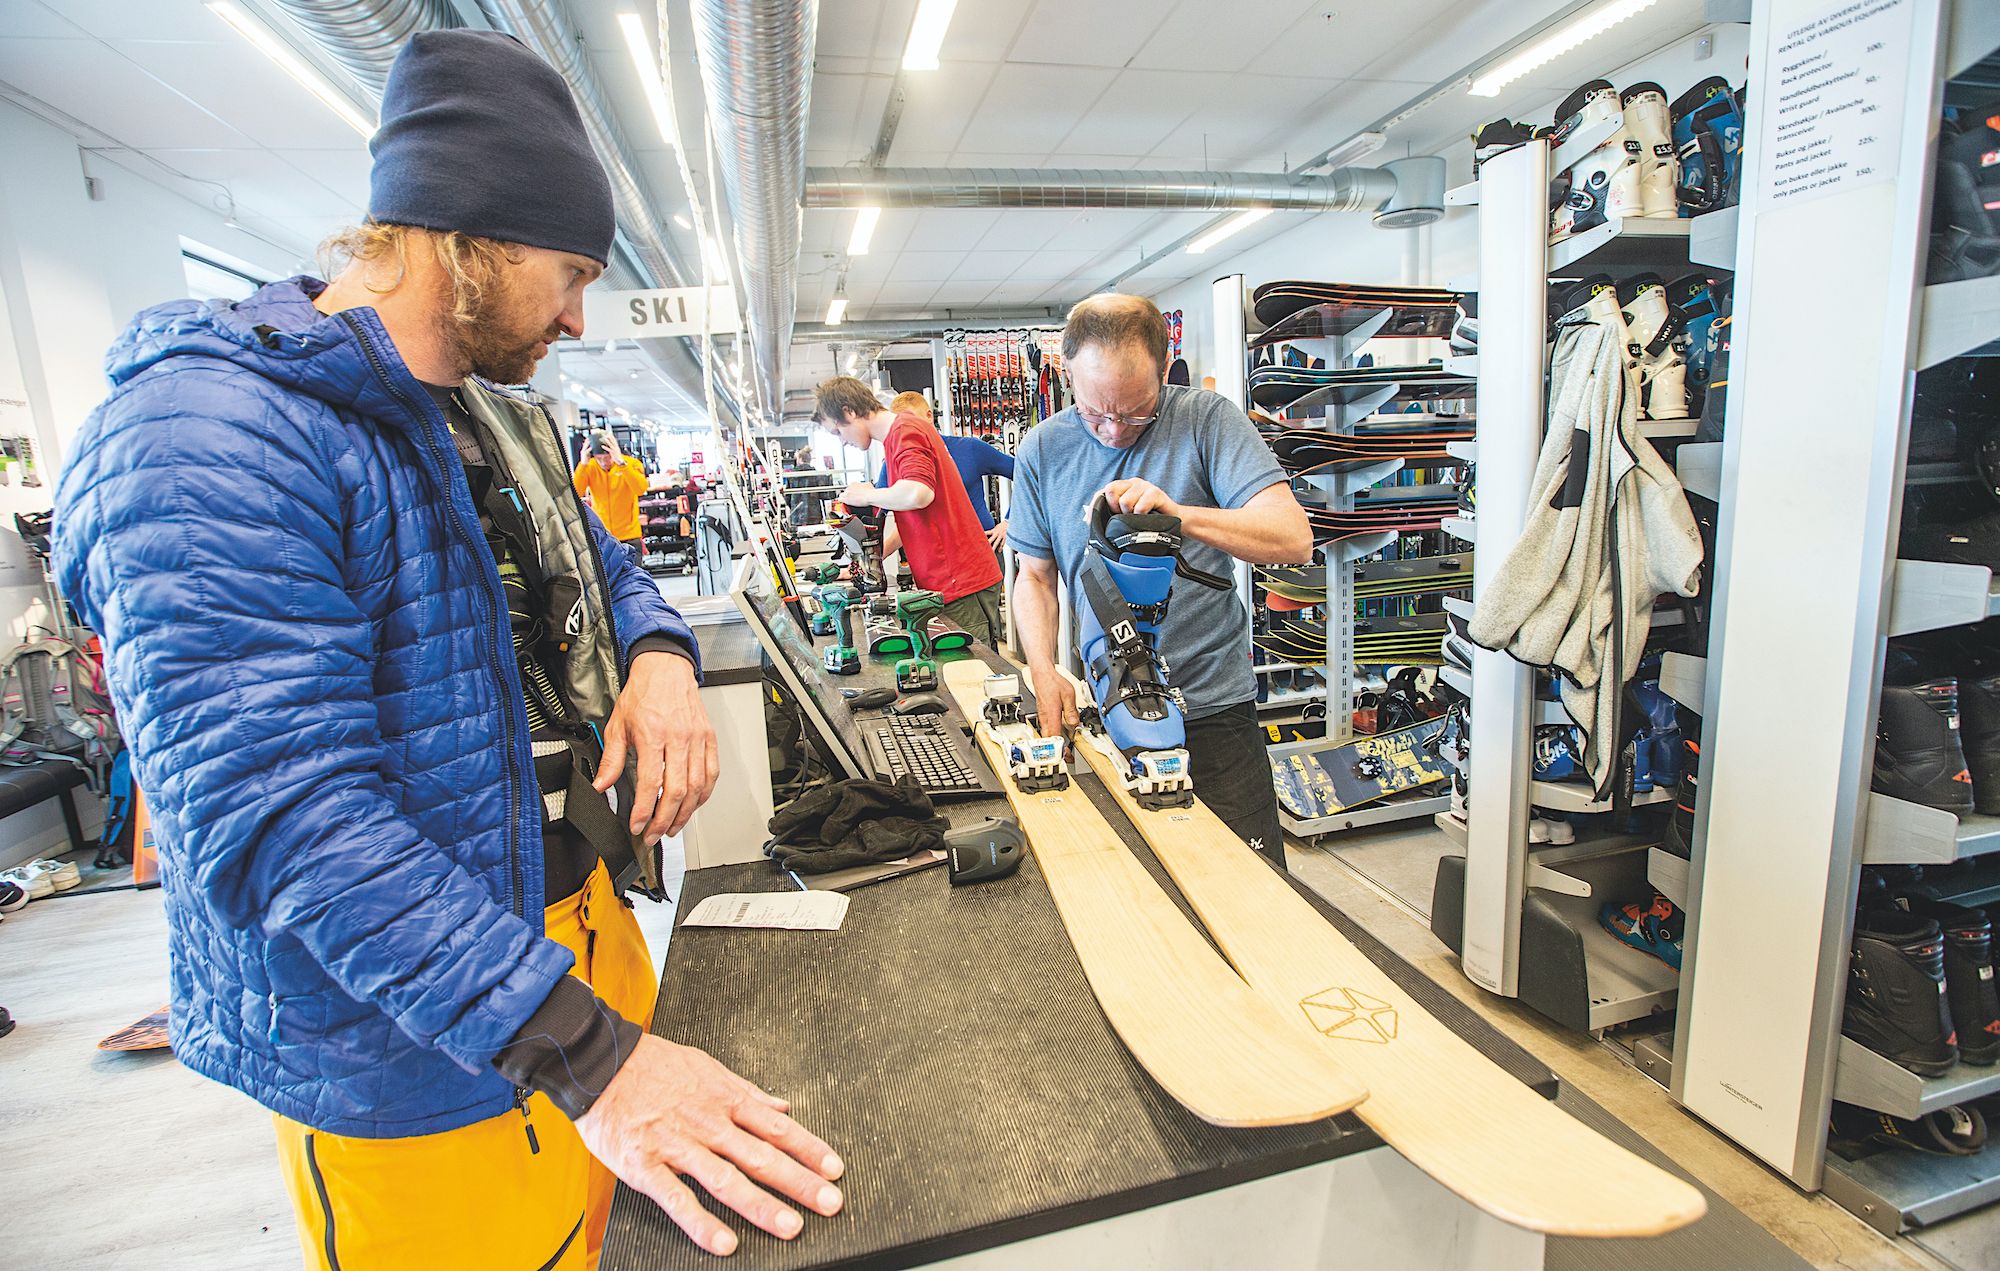 Roeispaan Mammoet val Wordt de skiwinkel overbodig? - Wintersport weblog